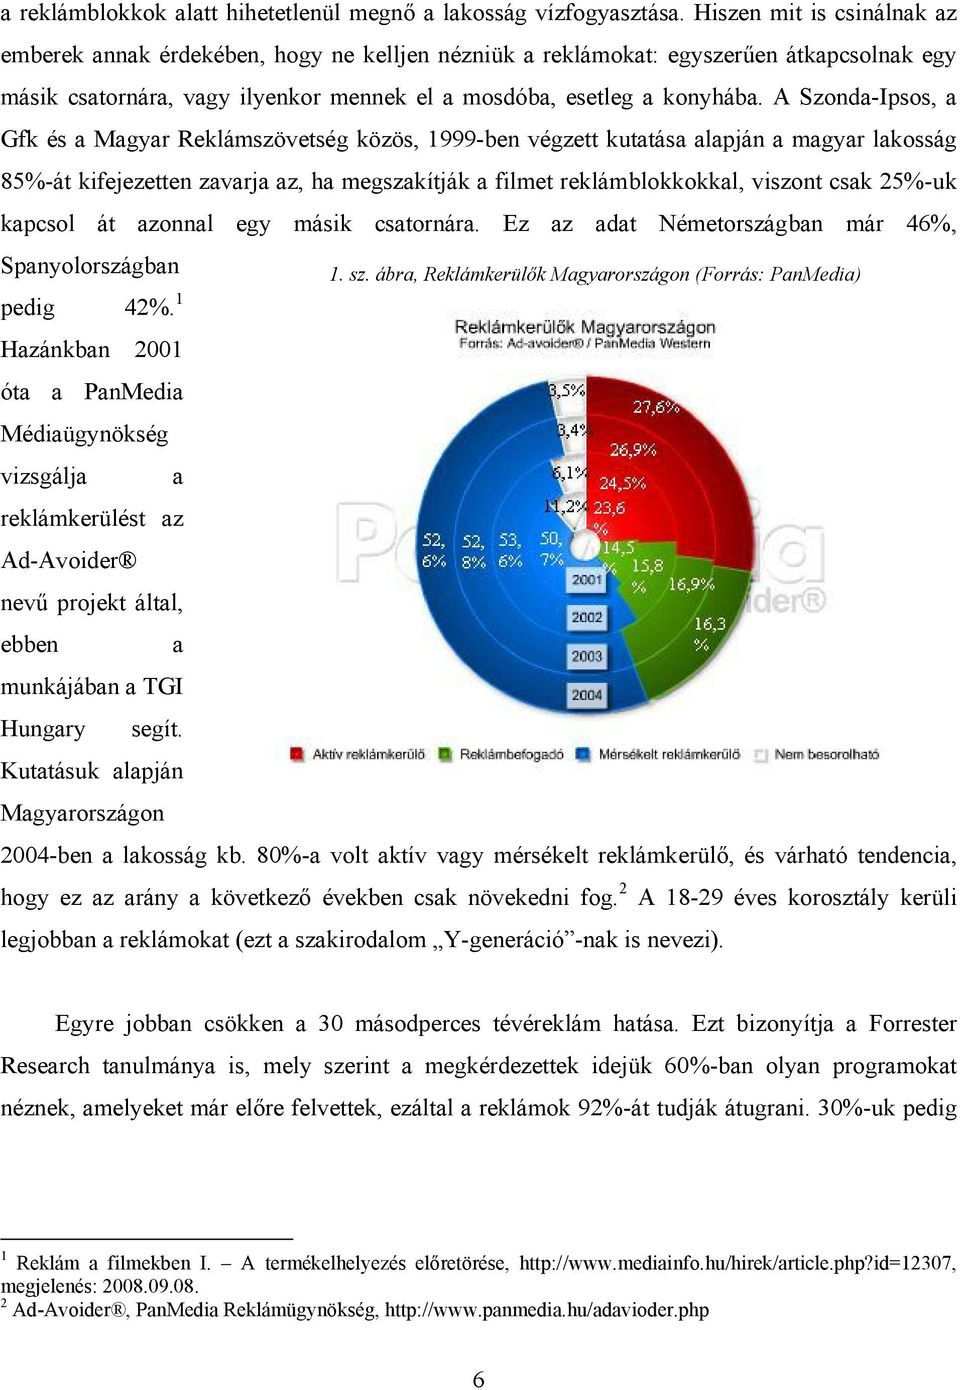 A Szonda-Ipsos, a Gfk és a Magyar Reklámszövetség közös, 1999-ben végzett kutatása alapján a magyar lakosság 85%-át kifejezetten zavarja az, ha megszakítják a filmet reklámblokkokkal, viszont csak